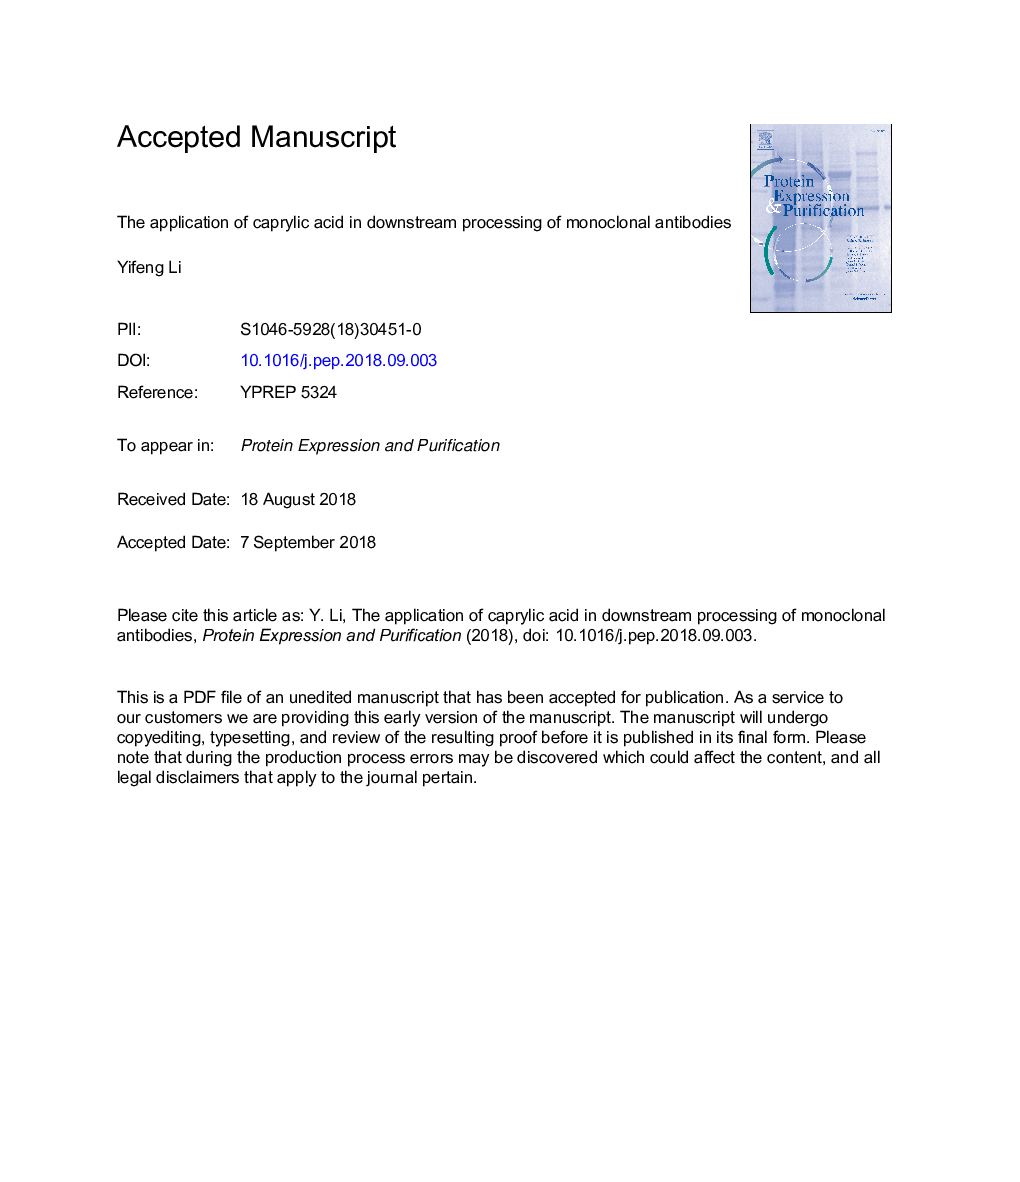 استفاده از اسید کراتیلیک در پردازش پایین دست از آنتی بادیهای مونوکلونال